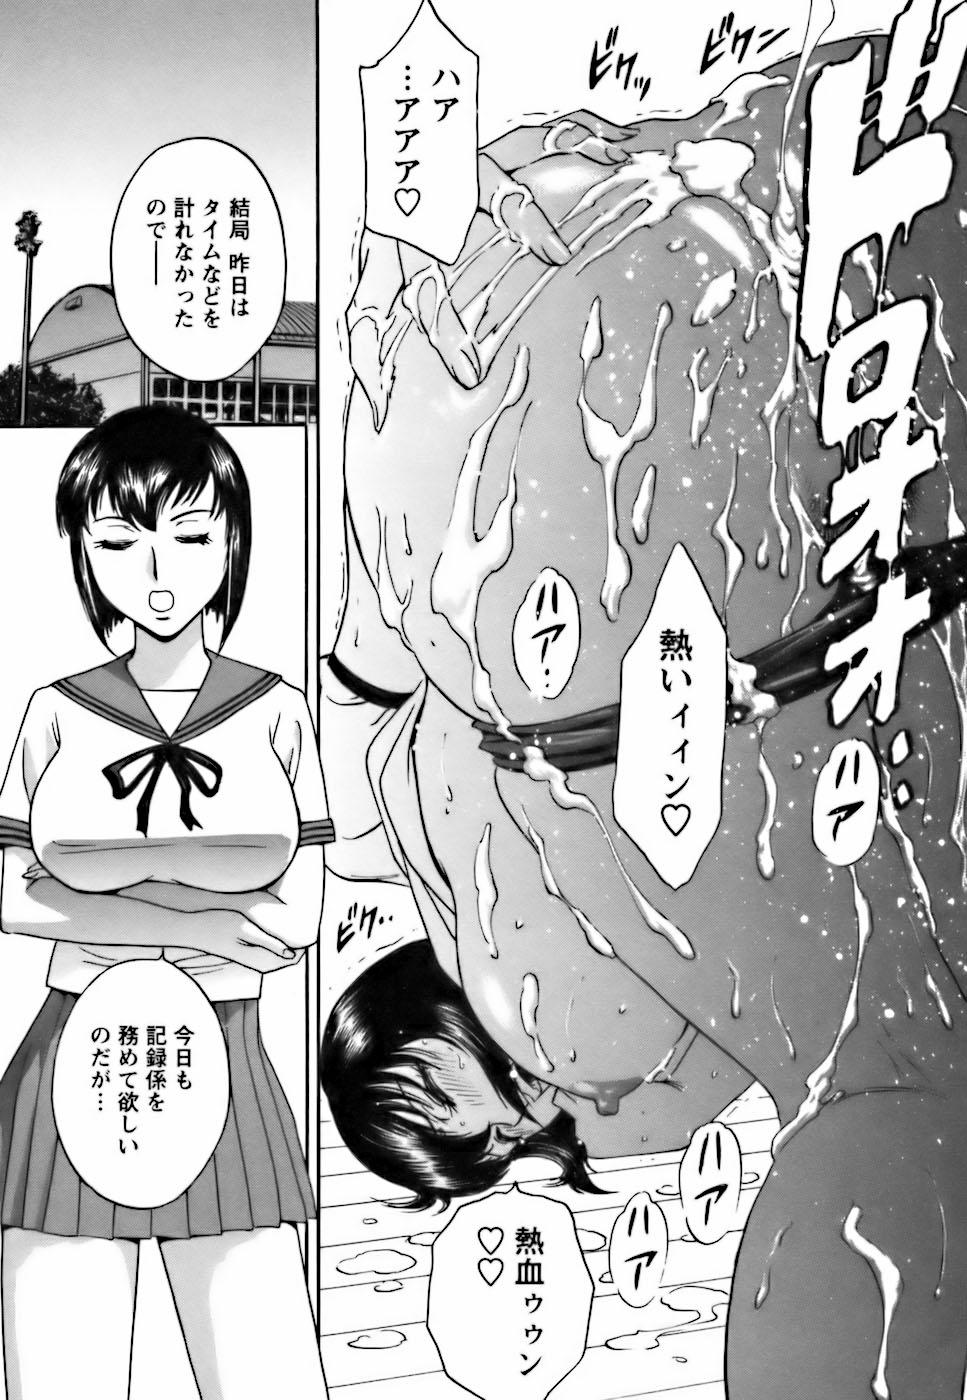 [Hidemaru] Mo-Retsu! Boin Sensei (Boing Boing Teacher) Vol.3 24